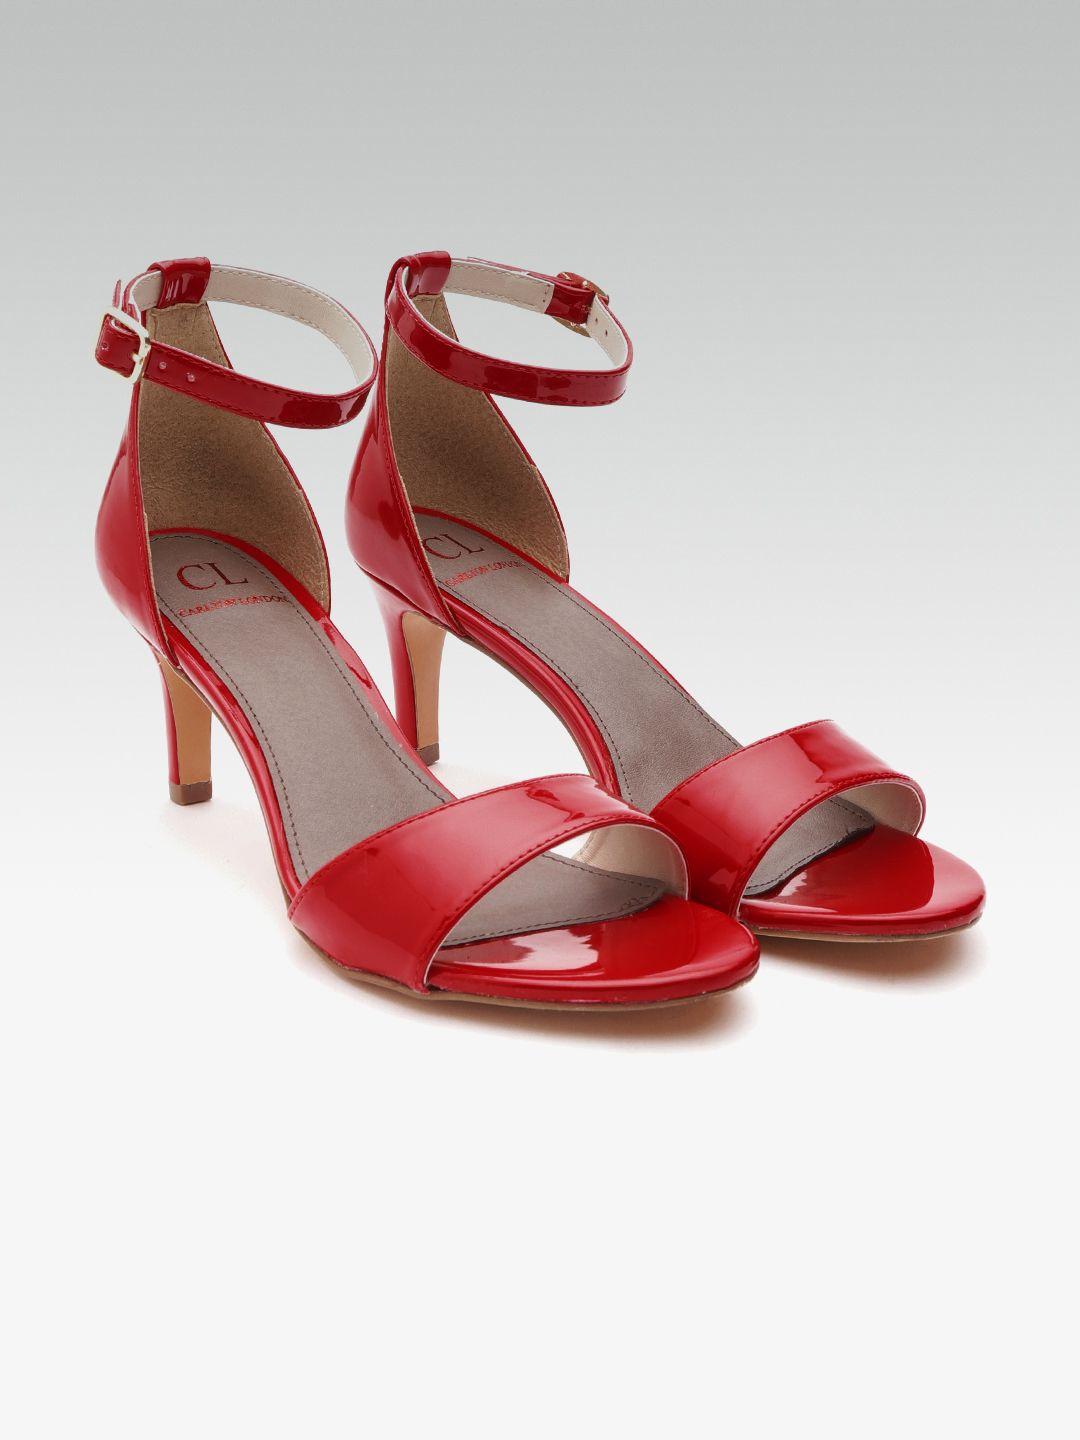 carlton london women red solid heels